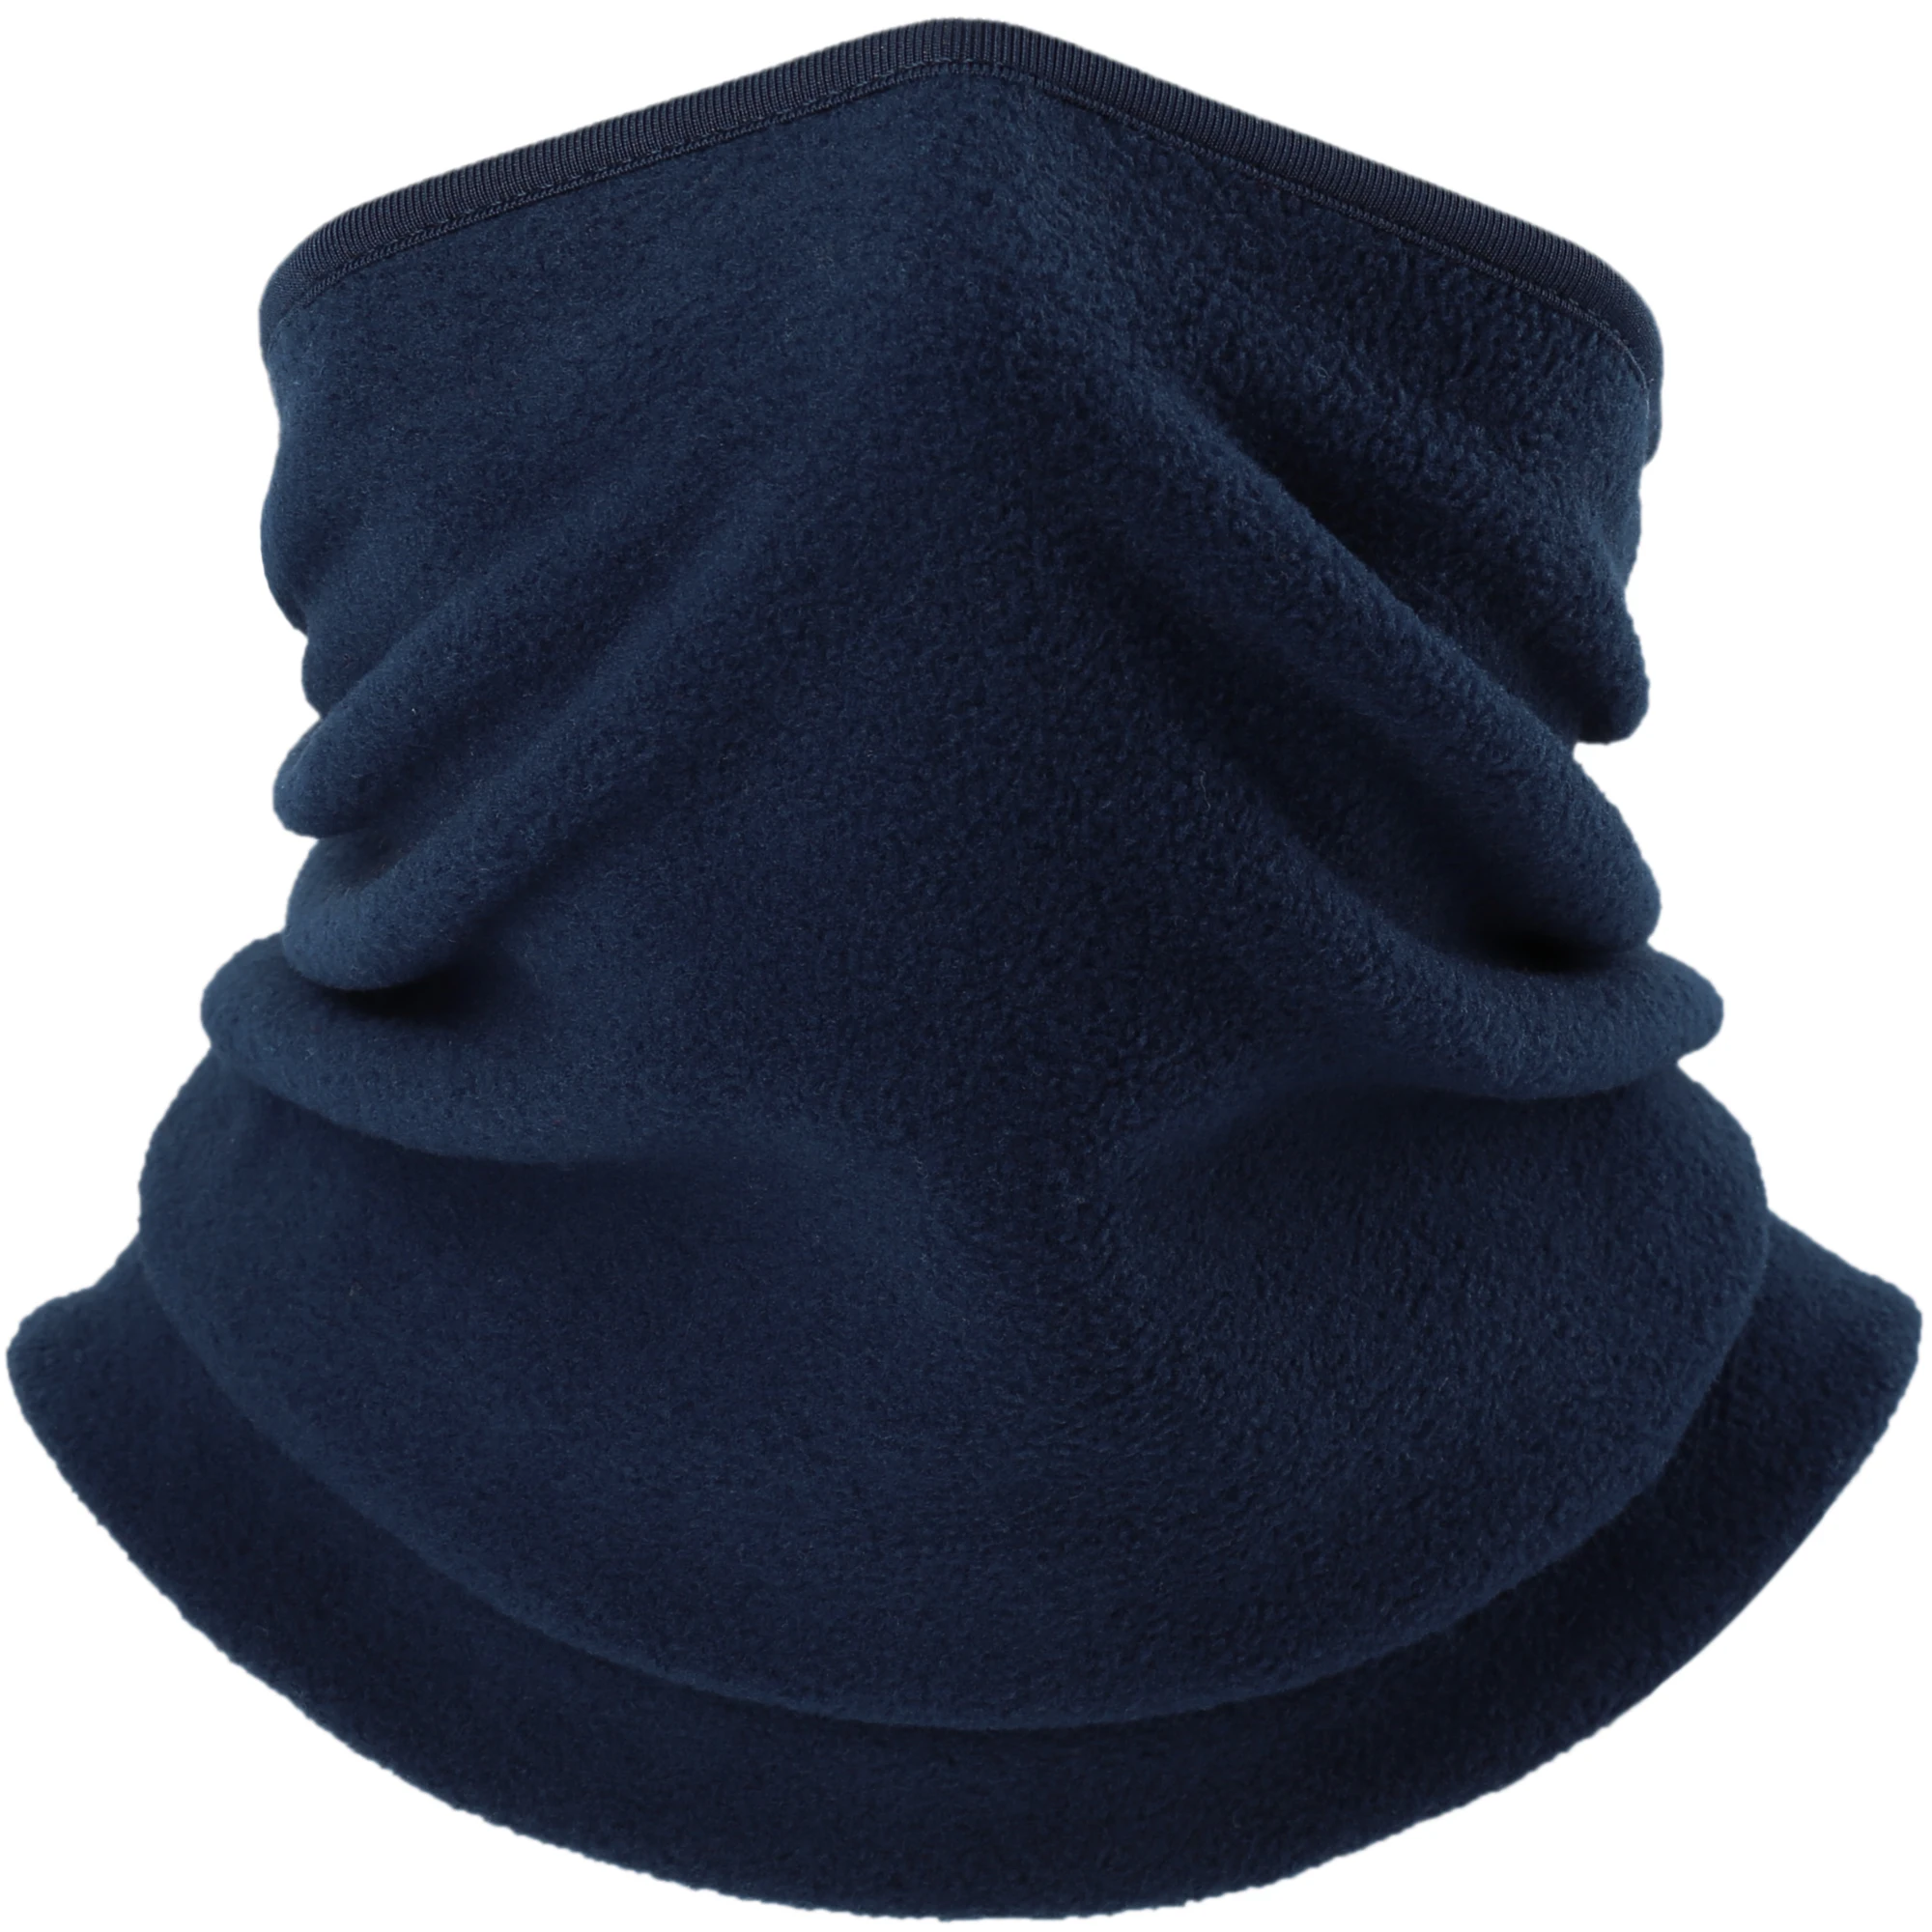 Зимние флисовые гетры для шеи, бандана, полумаски для лица, трубчатый шарф, платок, повязка на голову, велосипедный щиток для лица, шарфы для мужчин и женщин - Цвет: Deep Blue